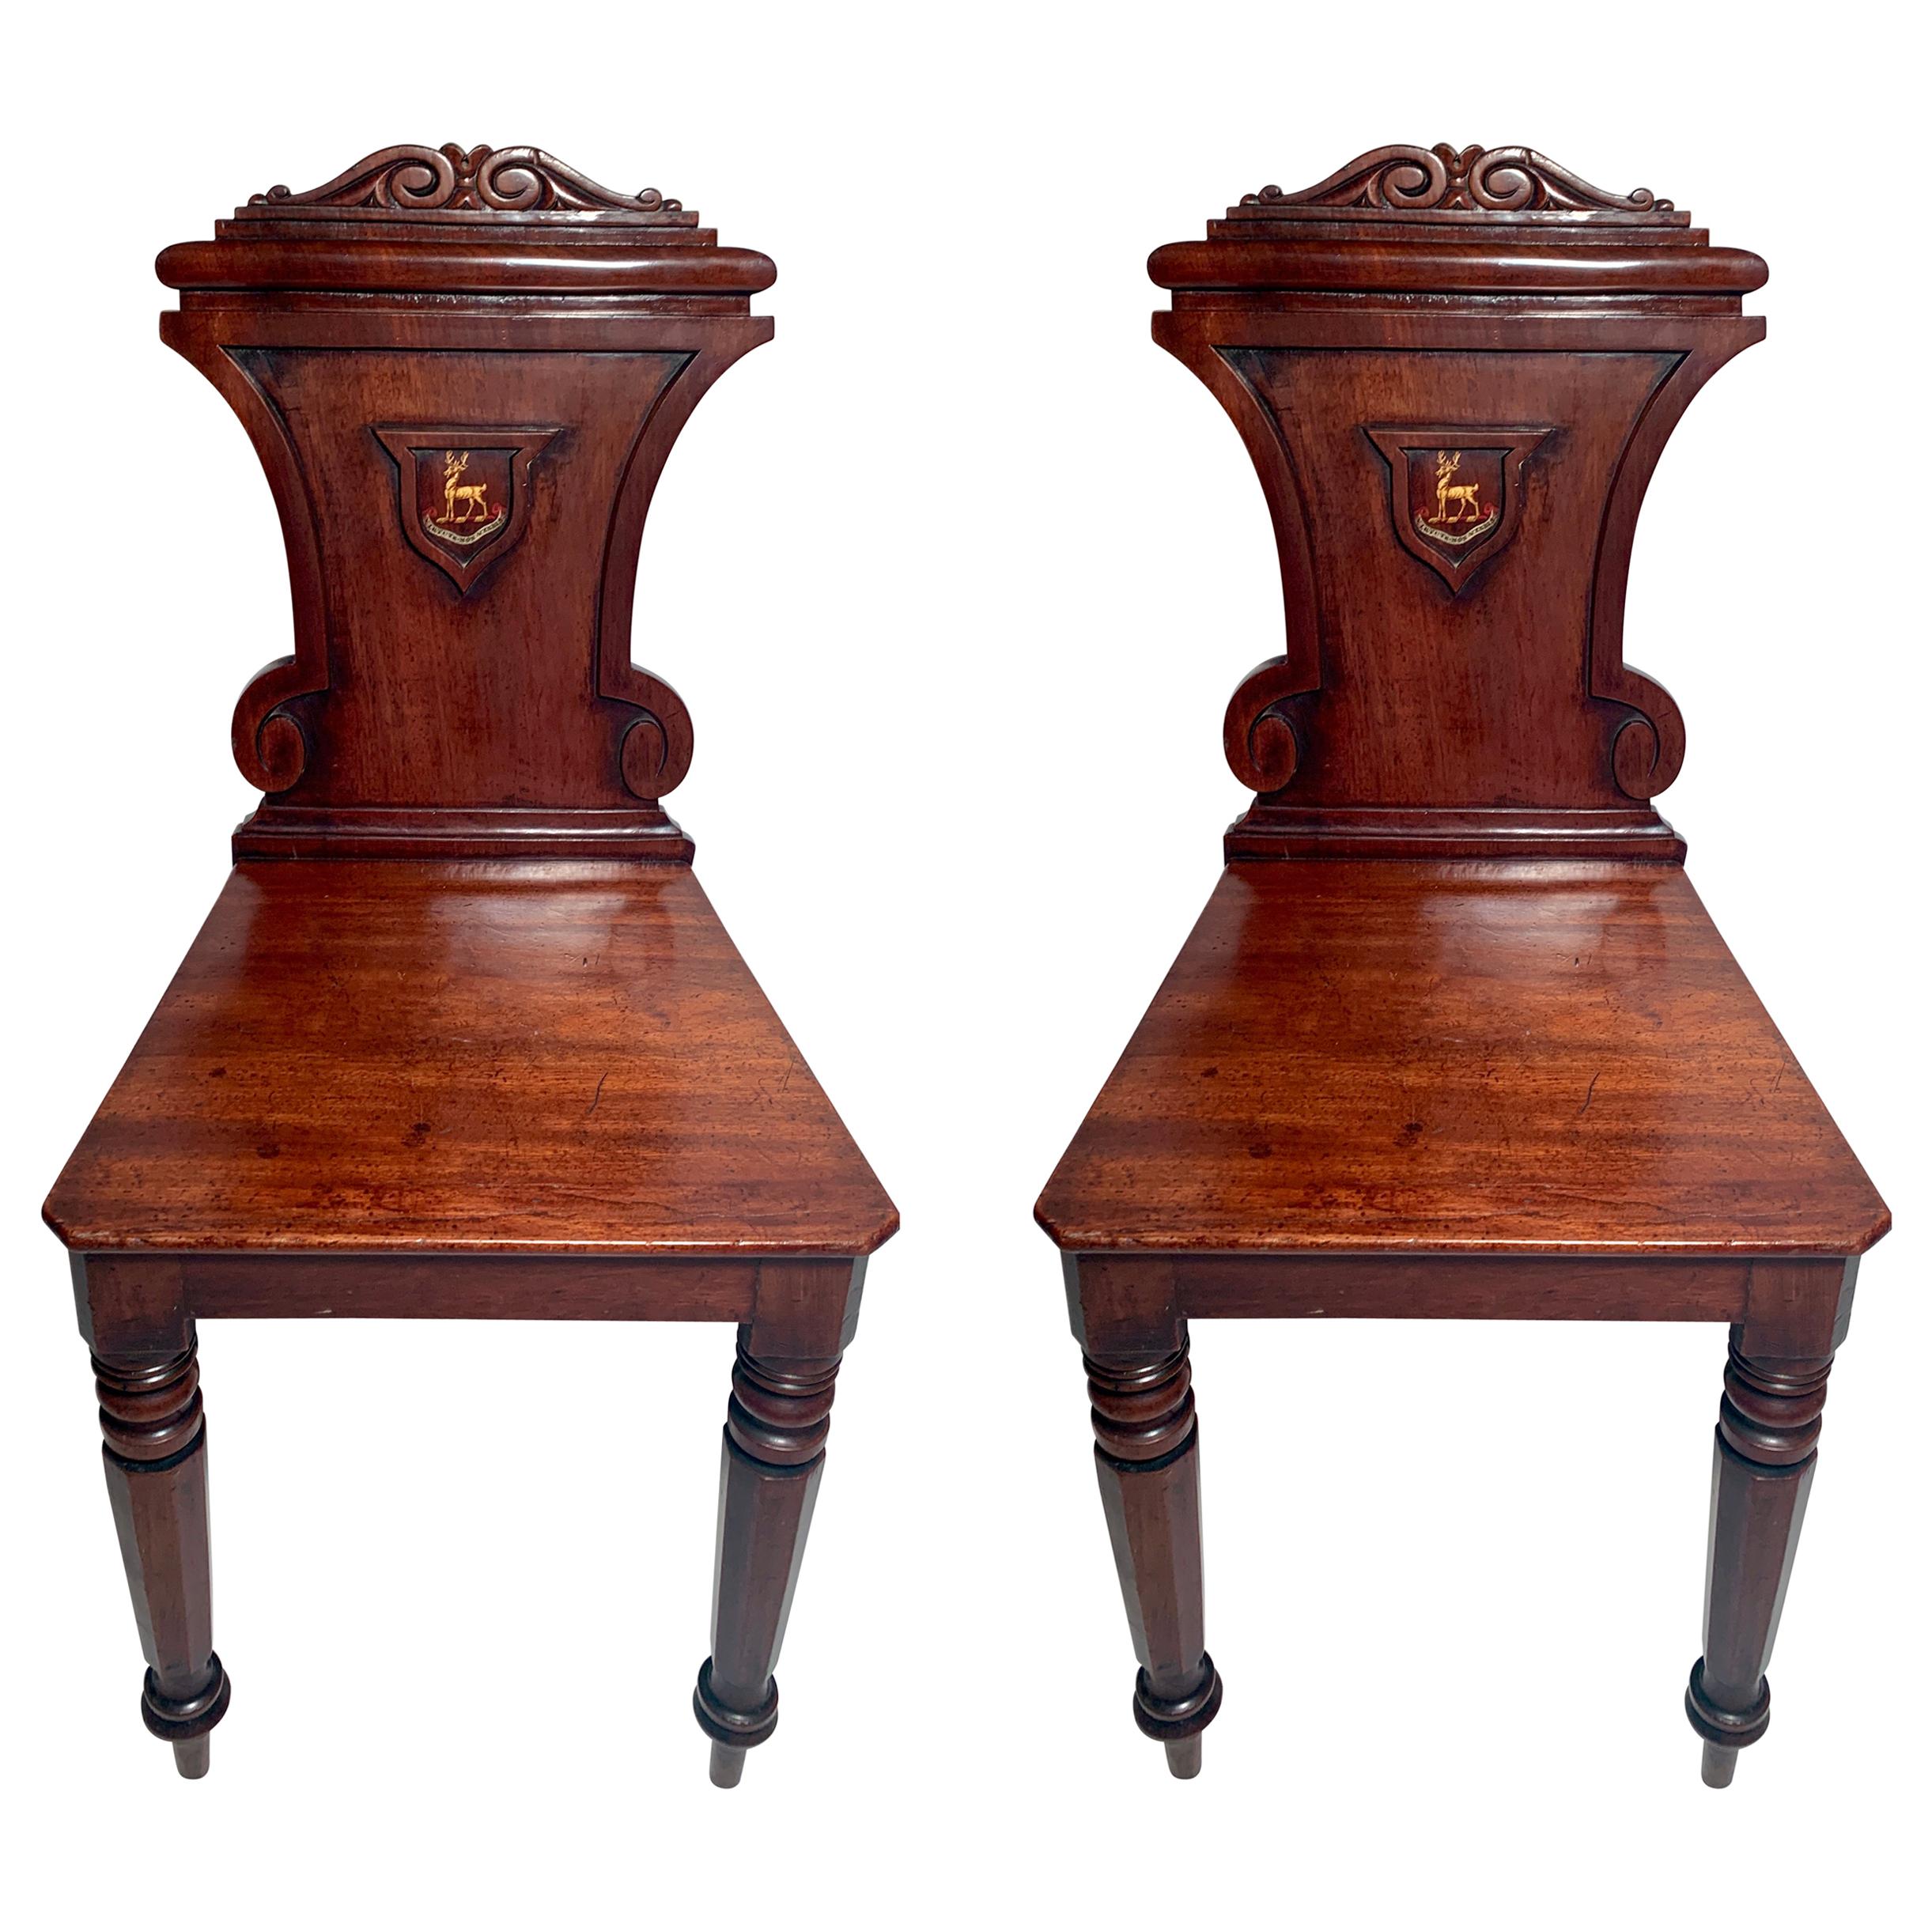 Pair of English Mahogany Wine Room Chairs "Virtute Non Verbis"